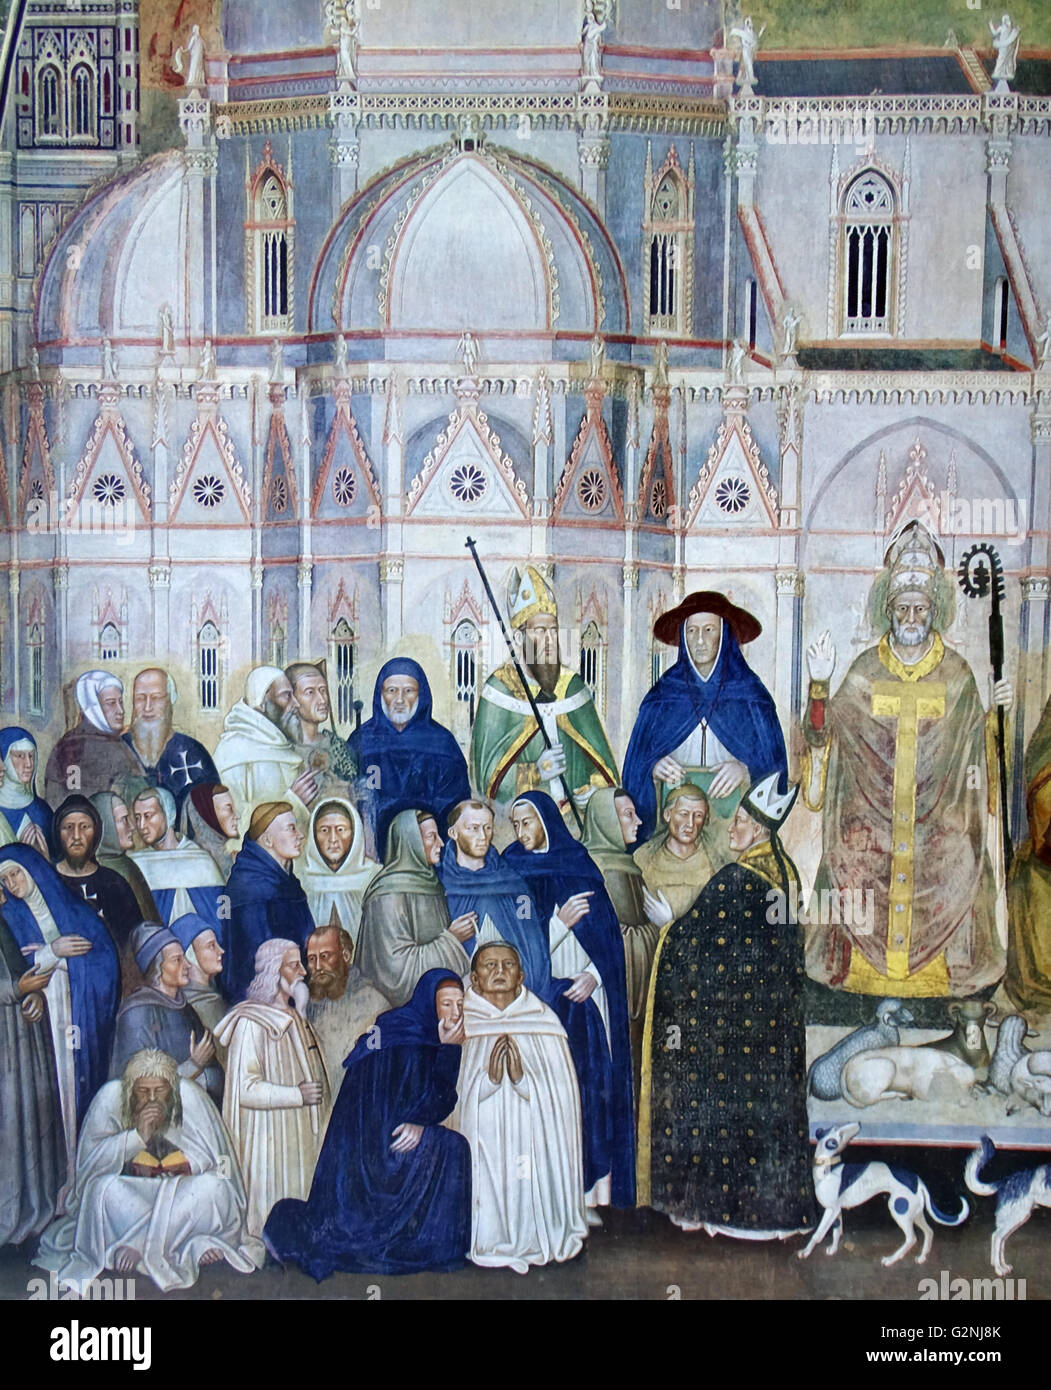 Fresque représentant l'Ordre dominicain peint par l'artiste italien Andrea da Firenze. Le tableau représente la hiérarchie du pouvoir dans l'Église. Fresco est situé dans la chapelle des Espagnols, Florence. En date du 13e siècle Banque D'Images